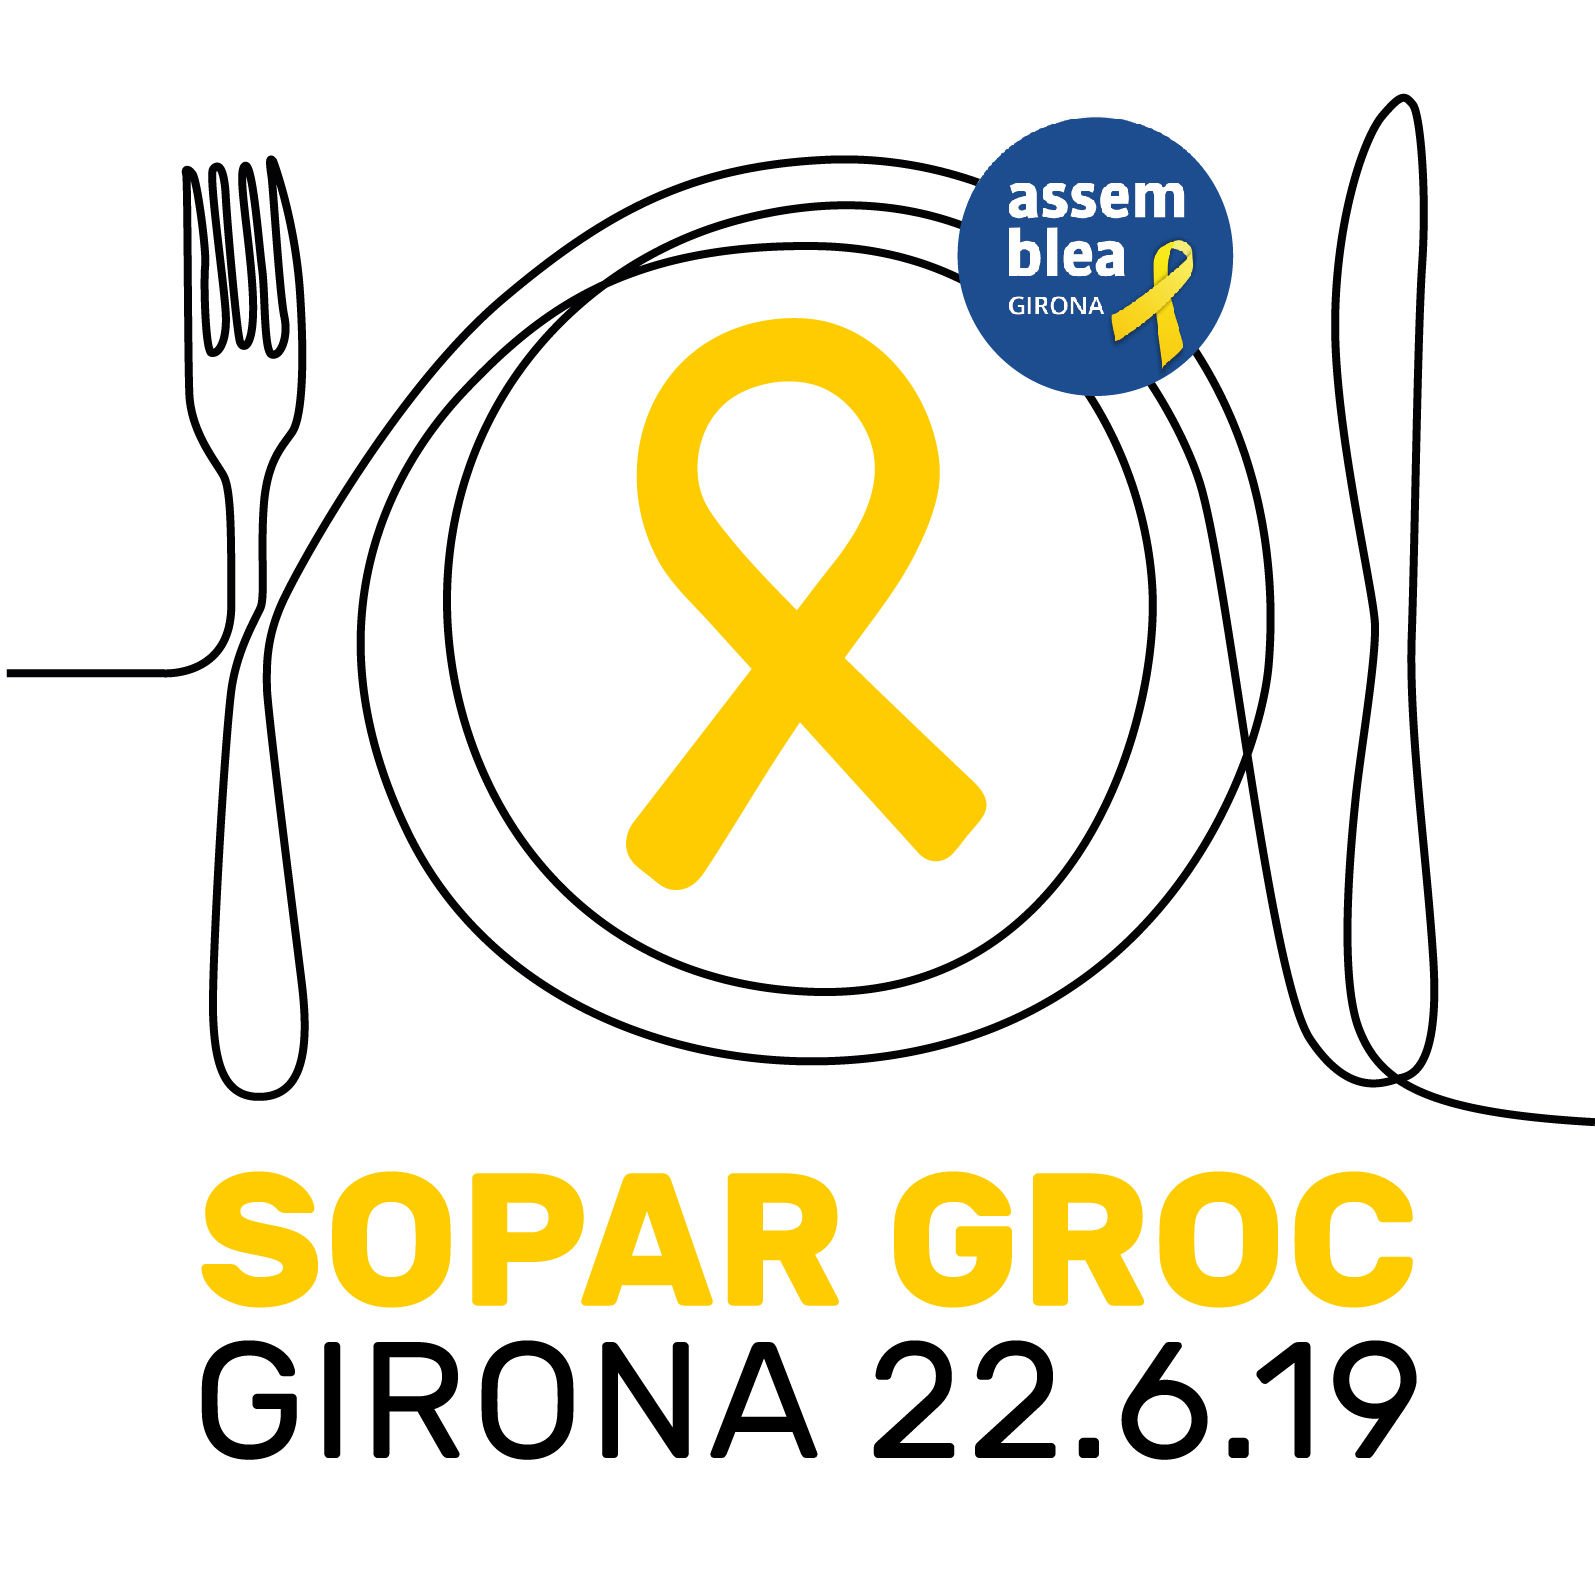 Sopar Groc a Girona